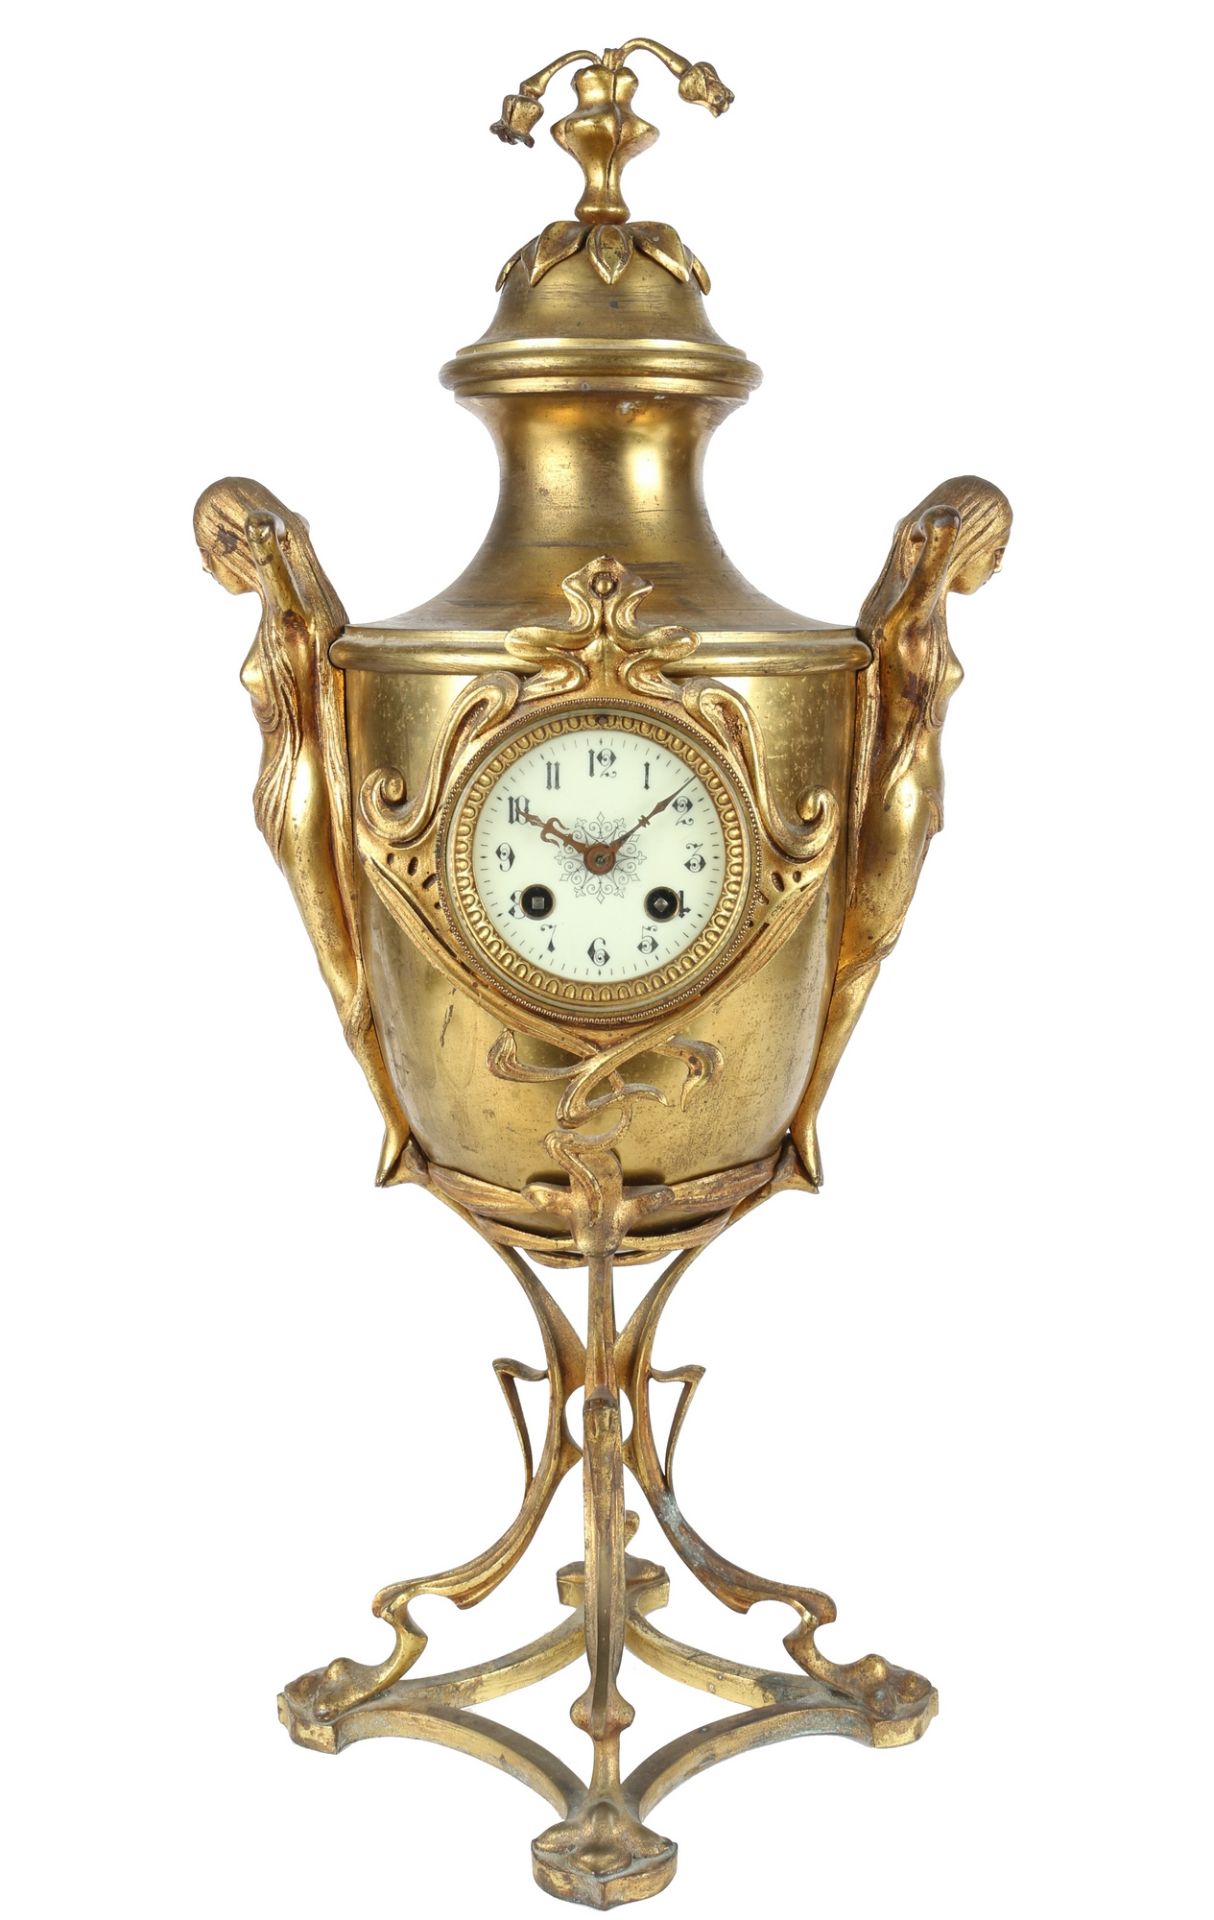 Bronze Jugendstil Kaminuhr um 1900, bronze art nouveau mantel clock,